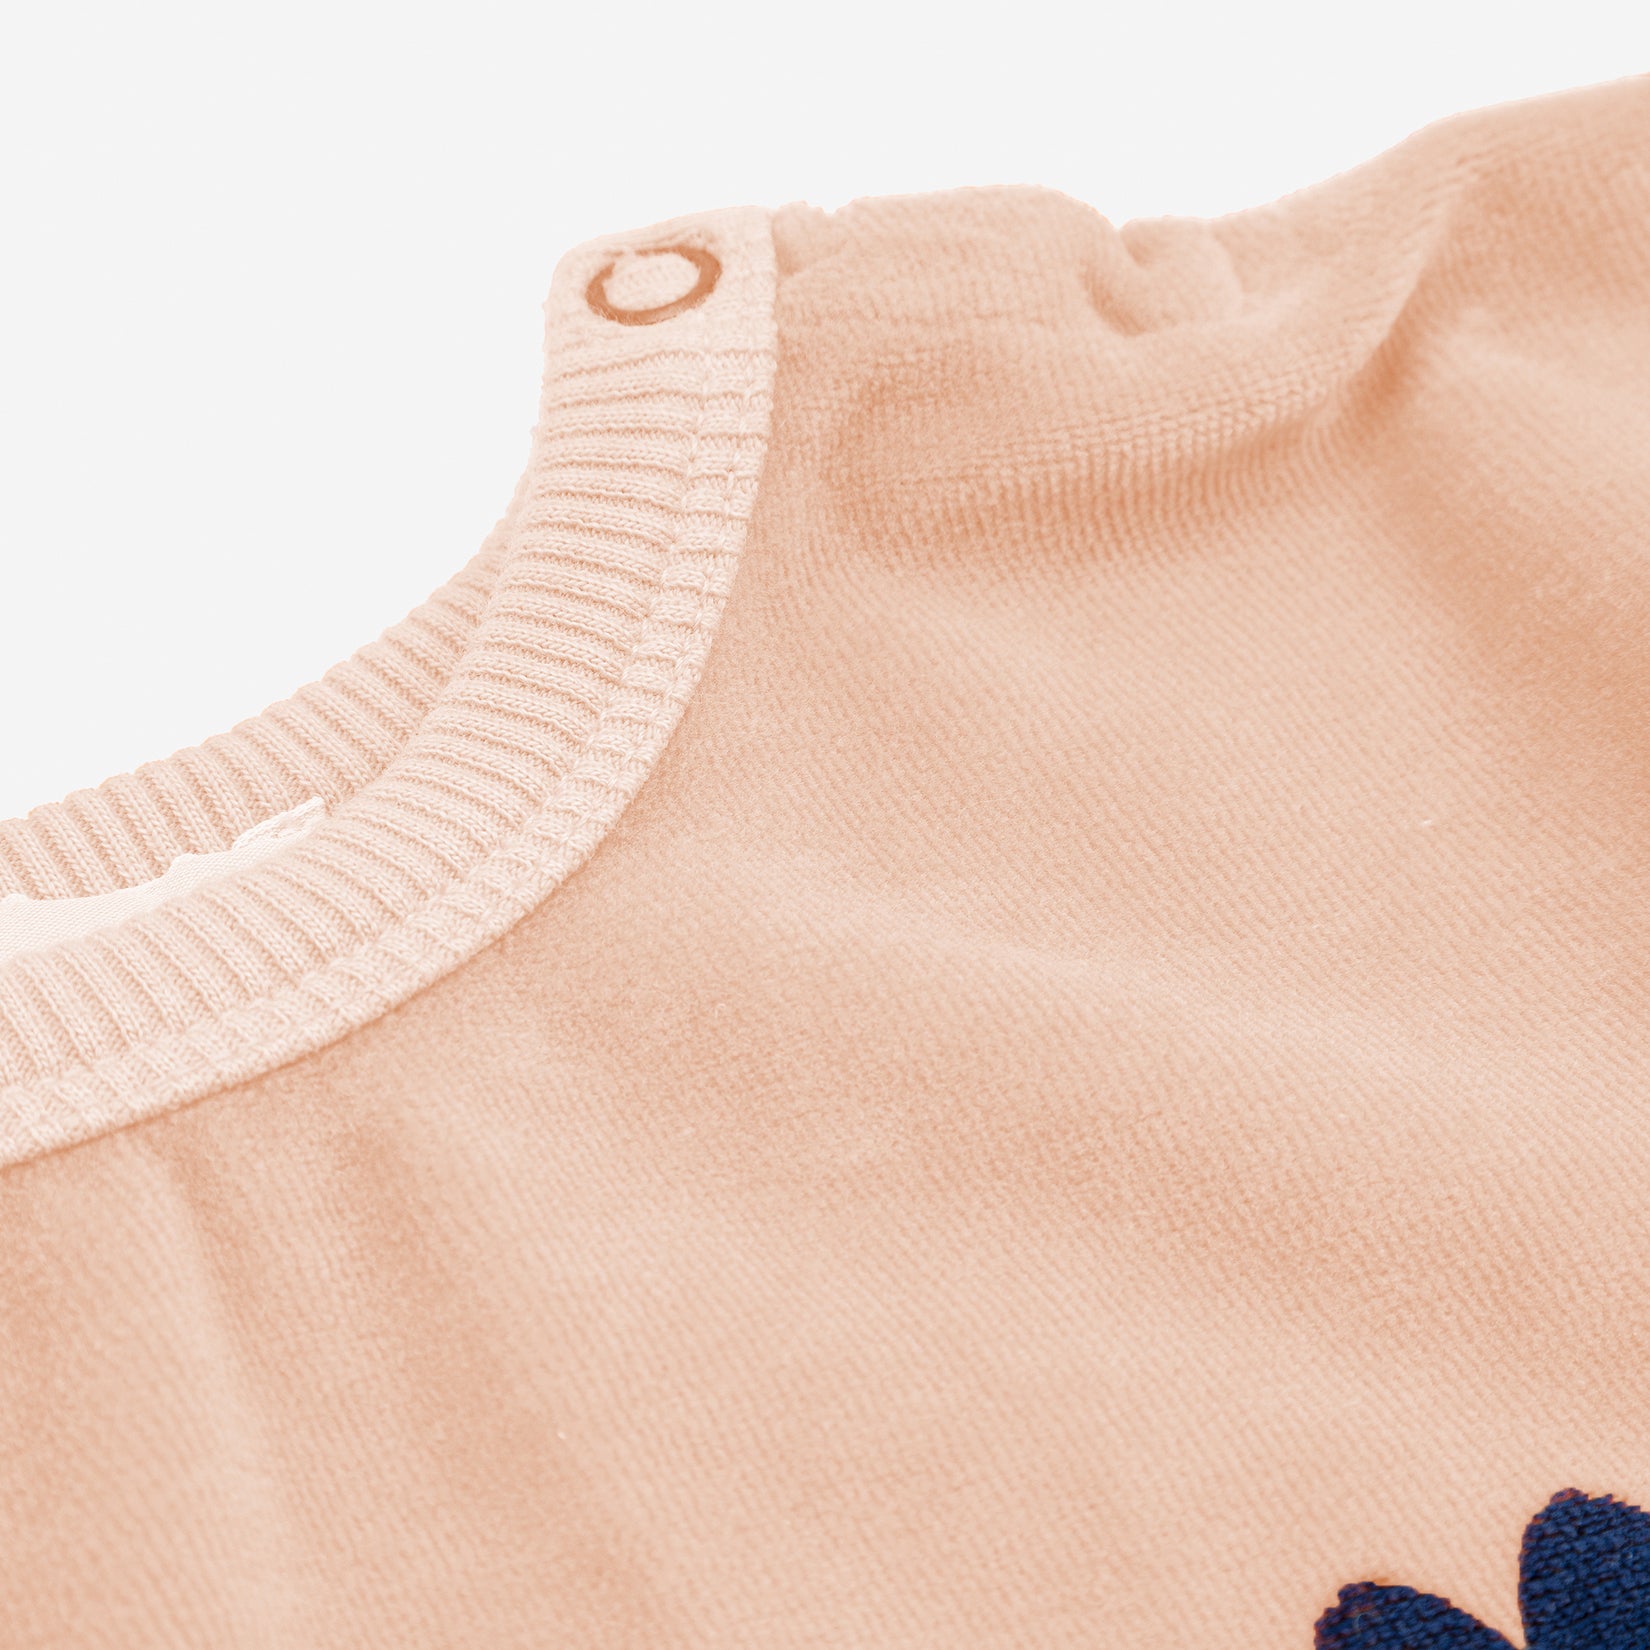 Baby Boys & Girls Light Pink Logo Velvet Sweatshirt